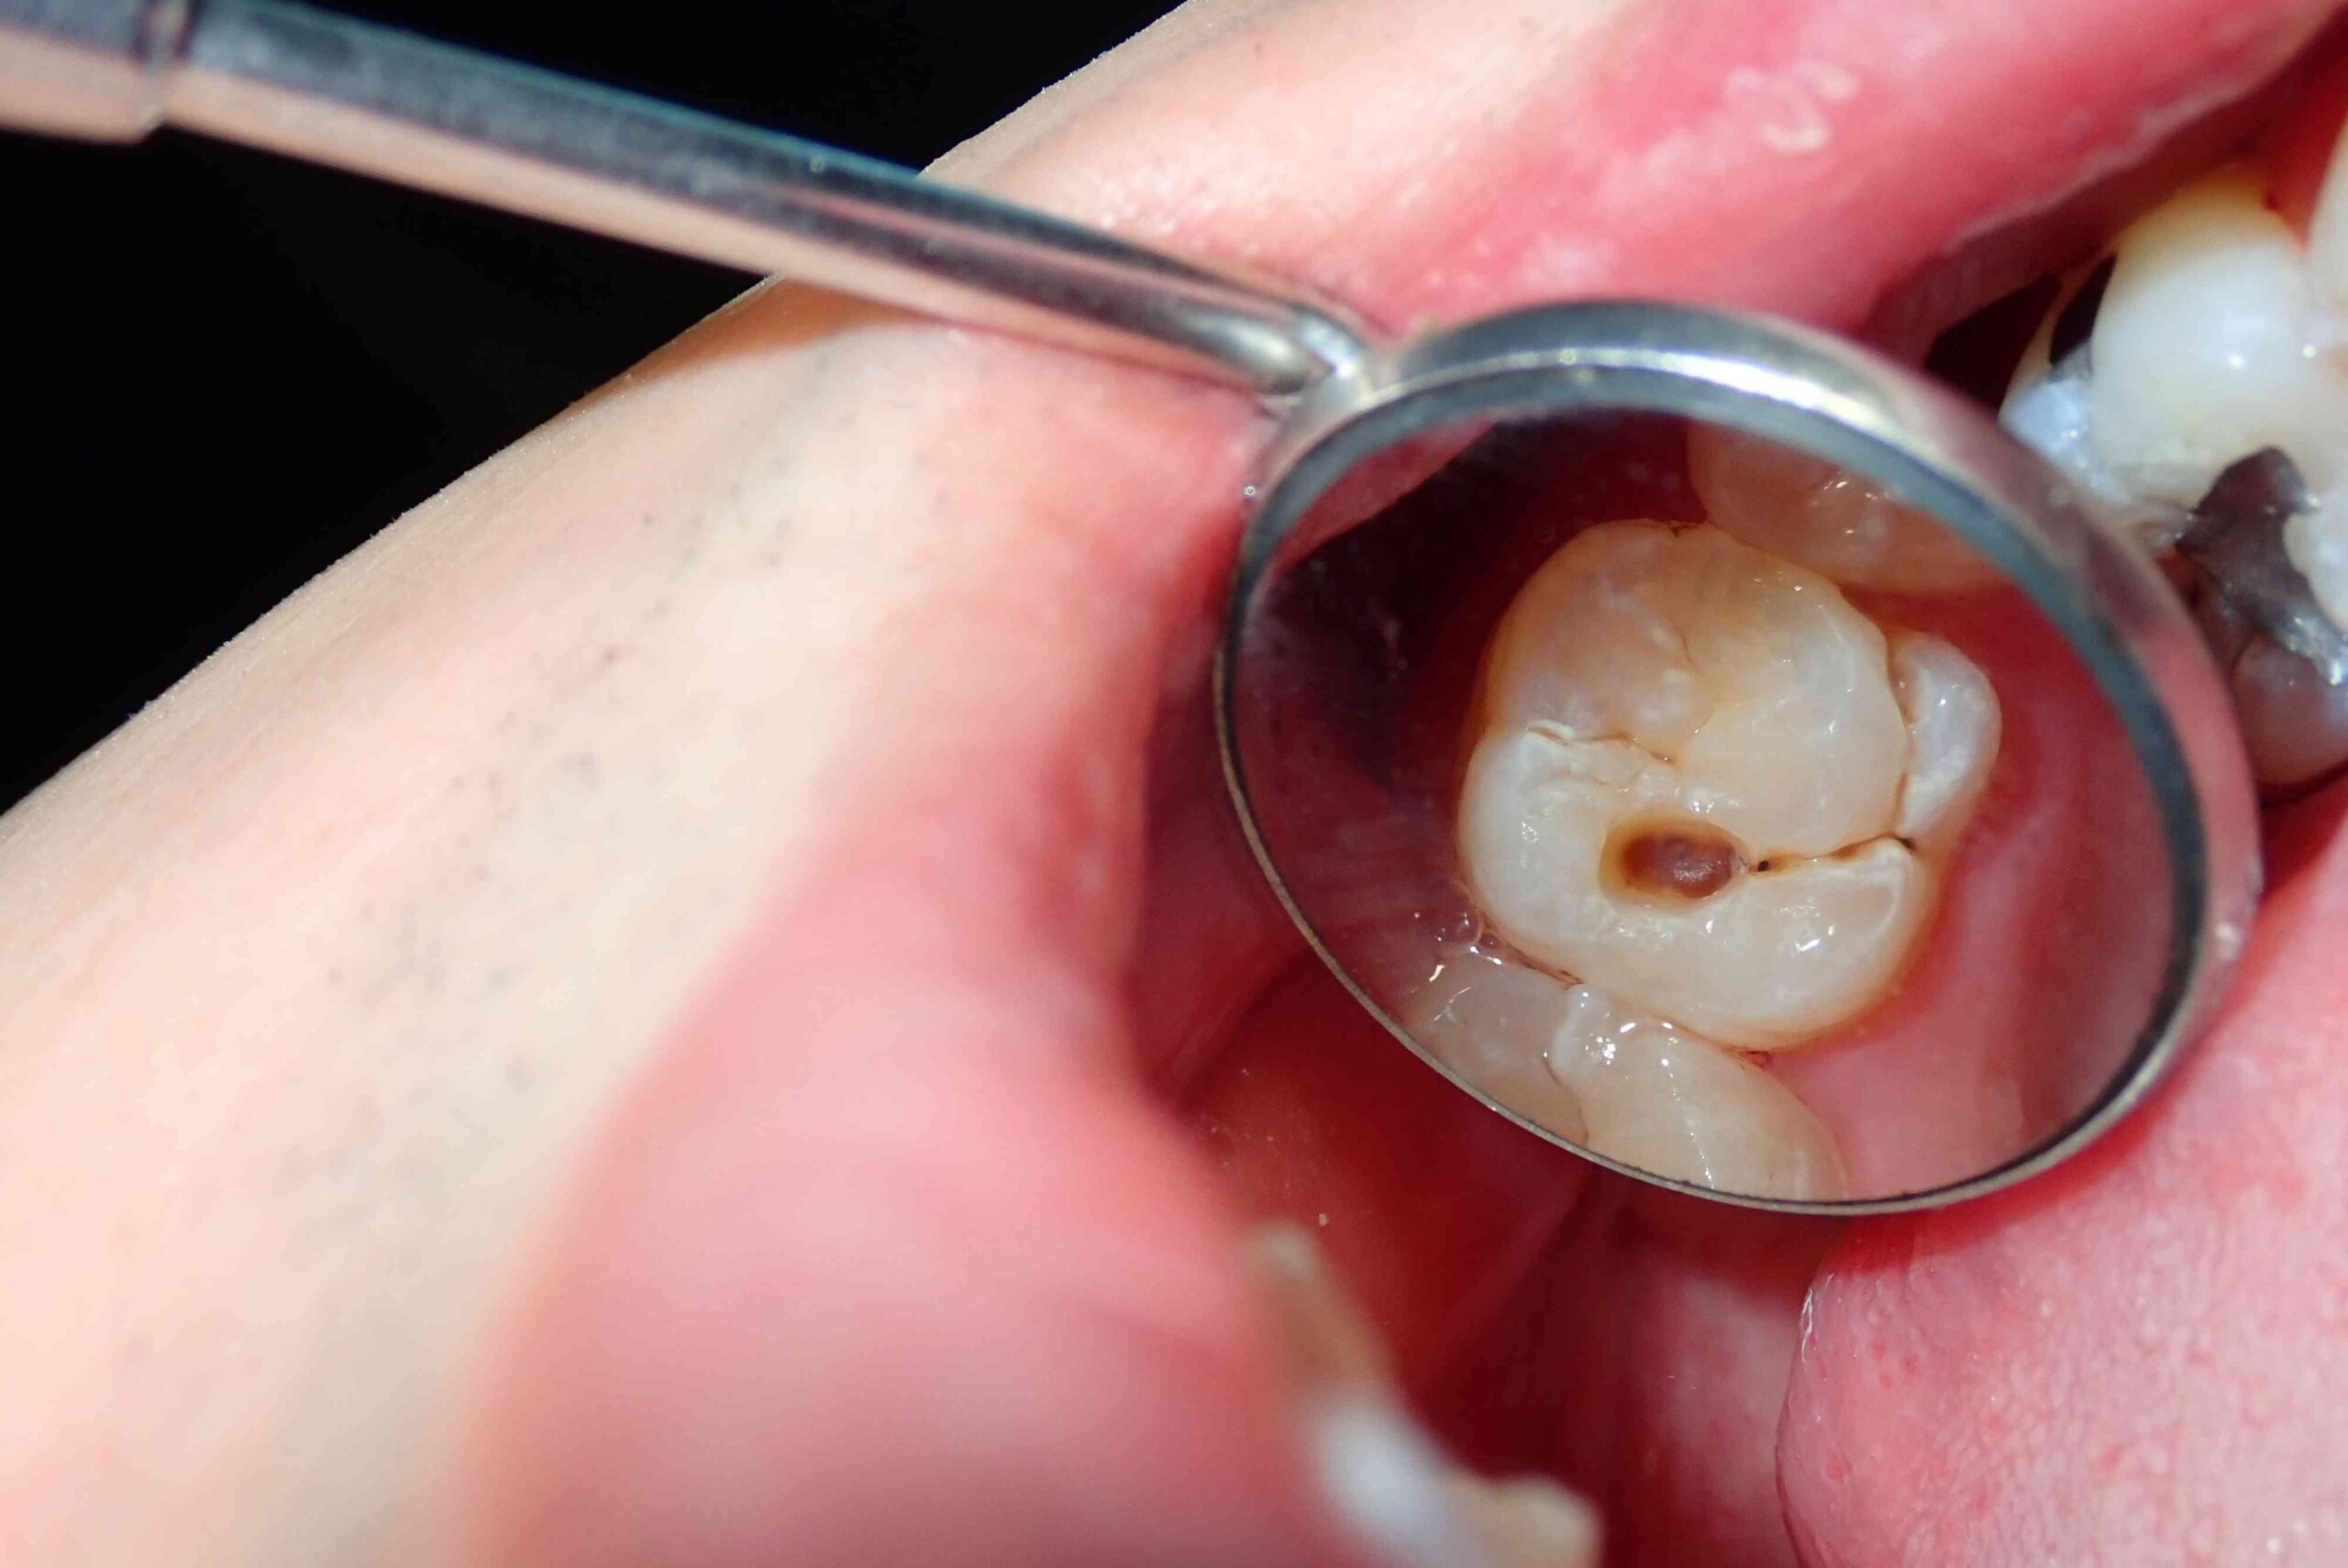 مراحل پوسیدگی دندان